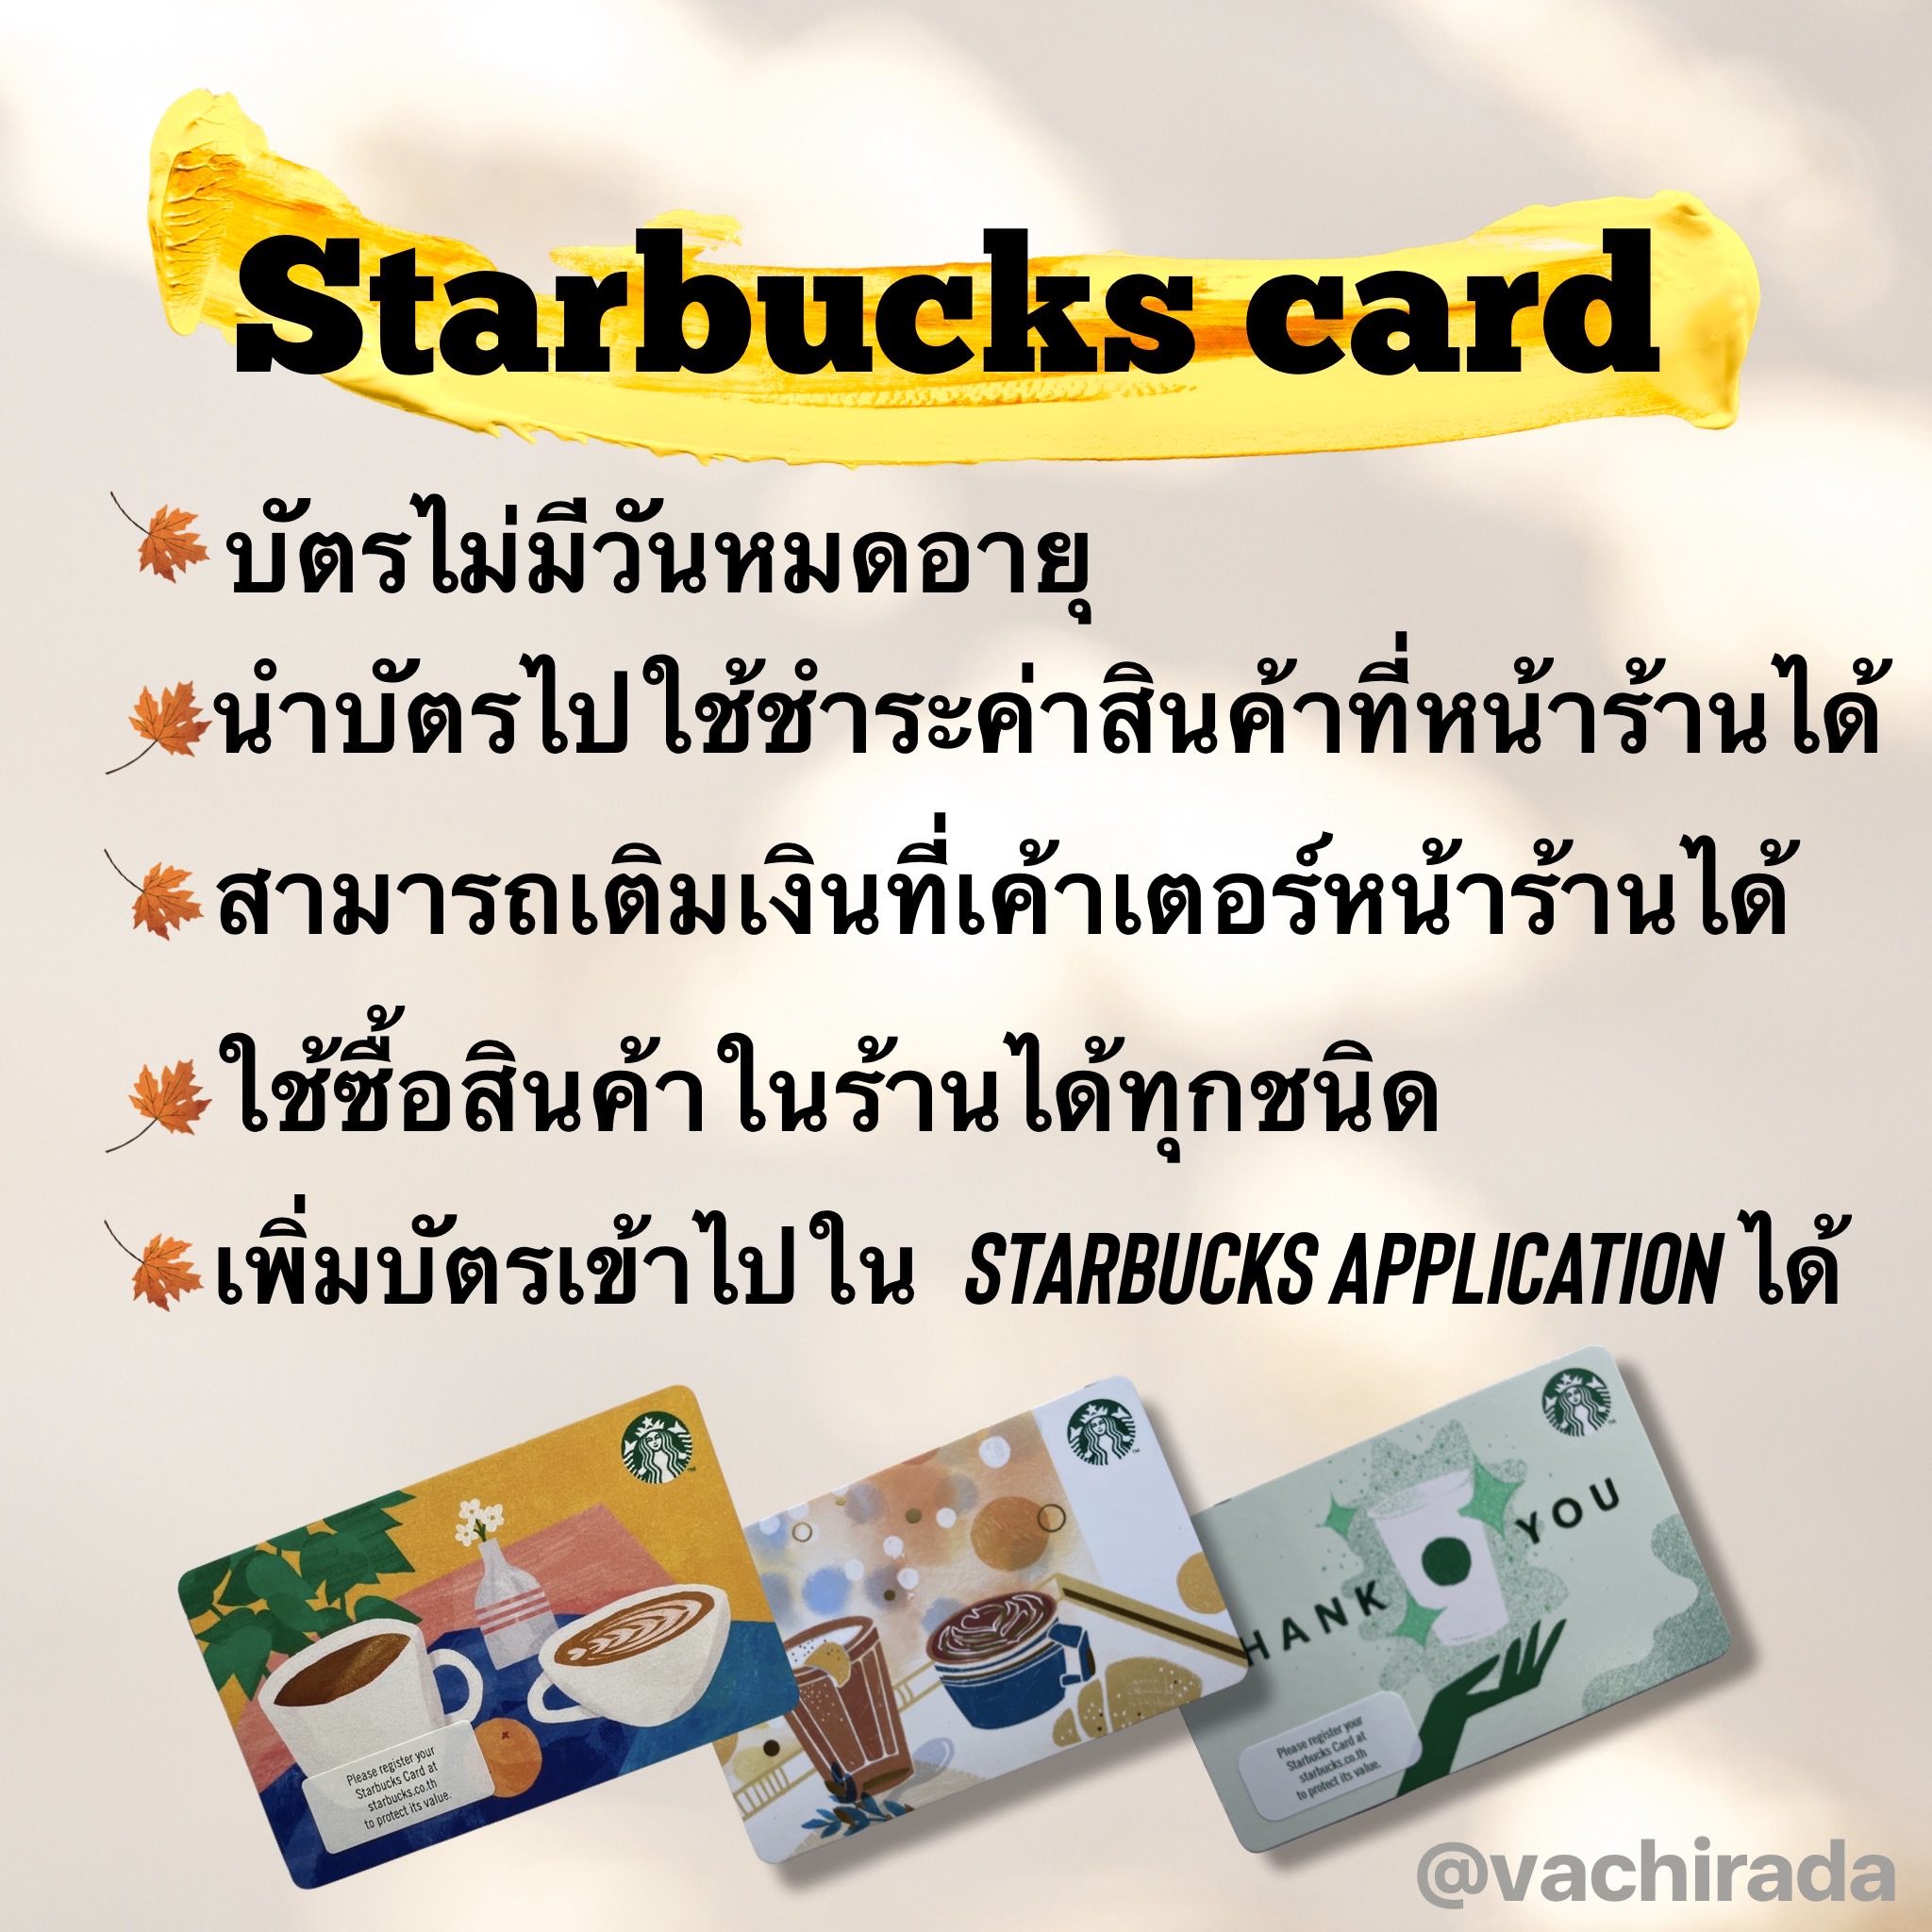 คำอธิบายเพิ่มเติมเกี่ยวกับ Starbucks card มูลค่า 1000 บาท (ส่งบัตรจริง/ไม่ส่งเลขหลังบัตร)